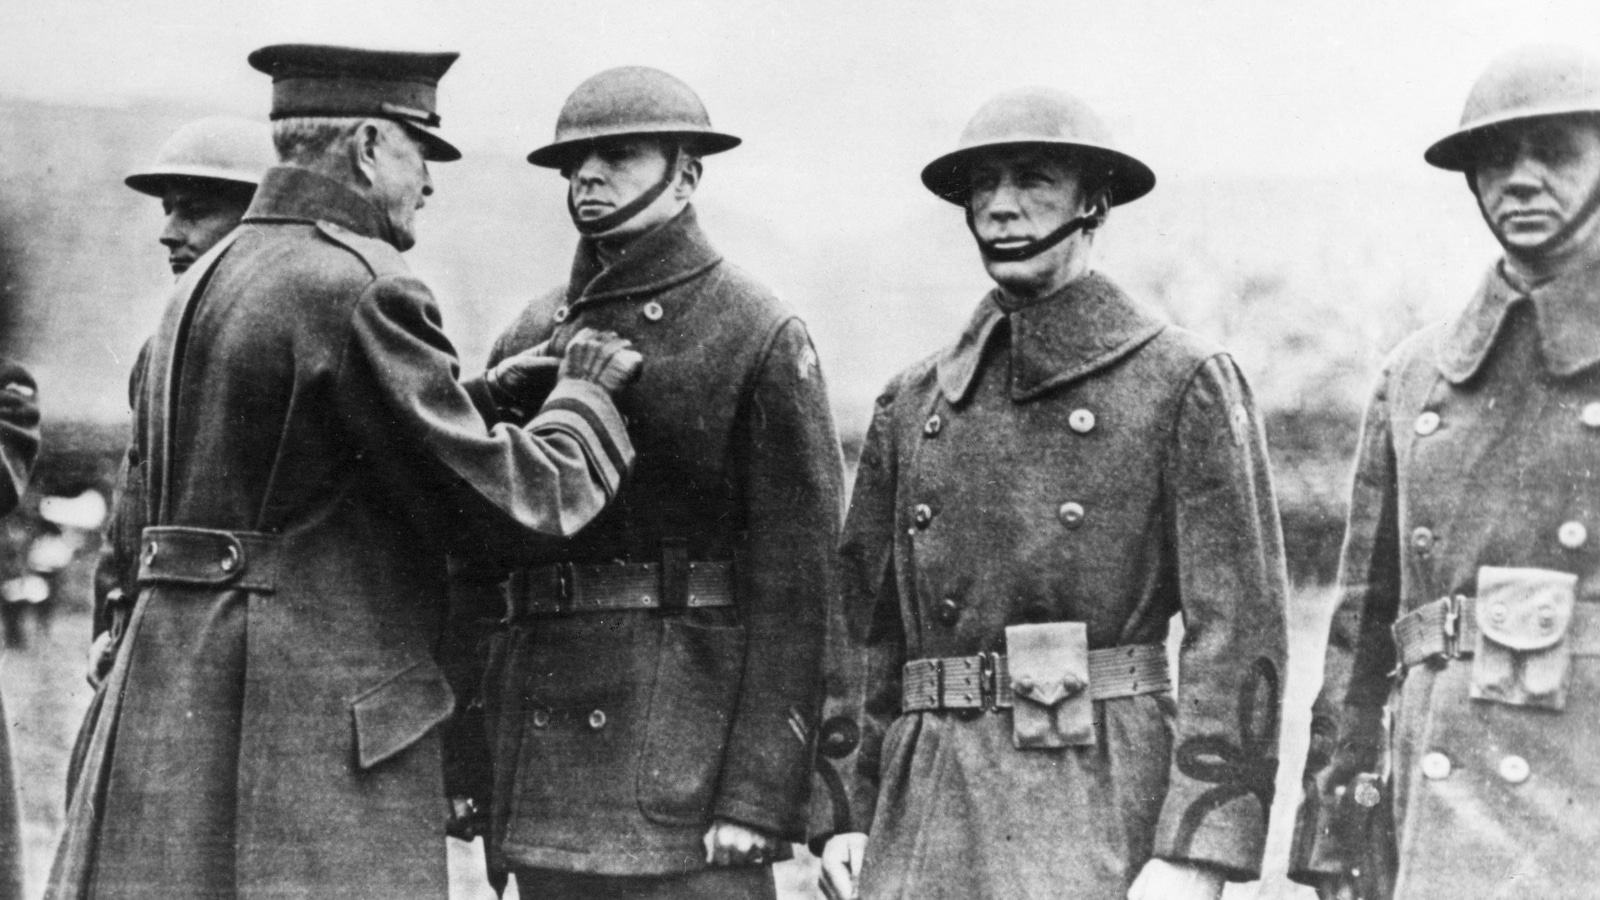 Le jeune officier Douglas MacArthur est récompensé par le général Pershing durant
la Première Guerre mondiale. Une vie entière consacrée à la guerre.